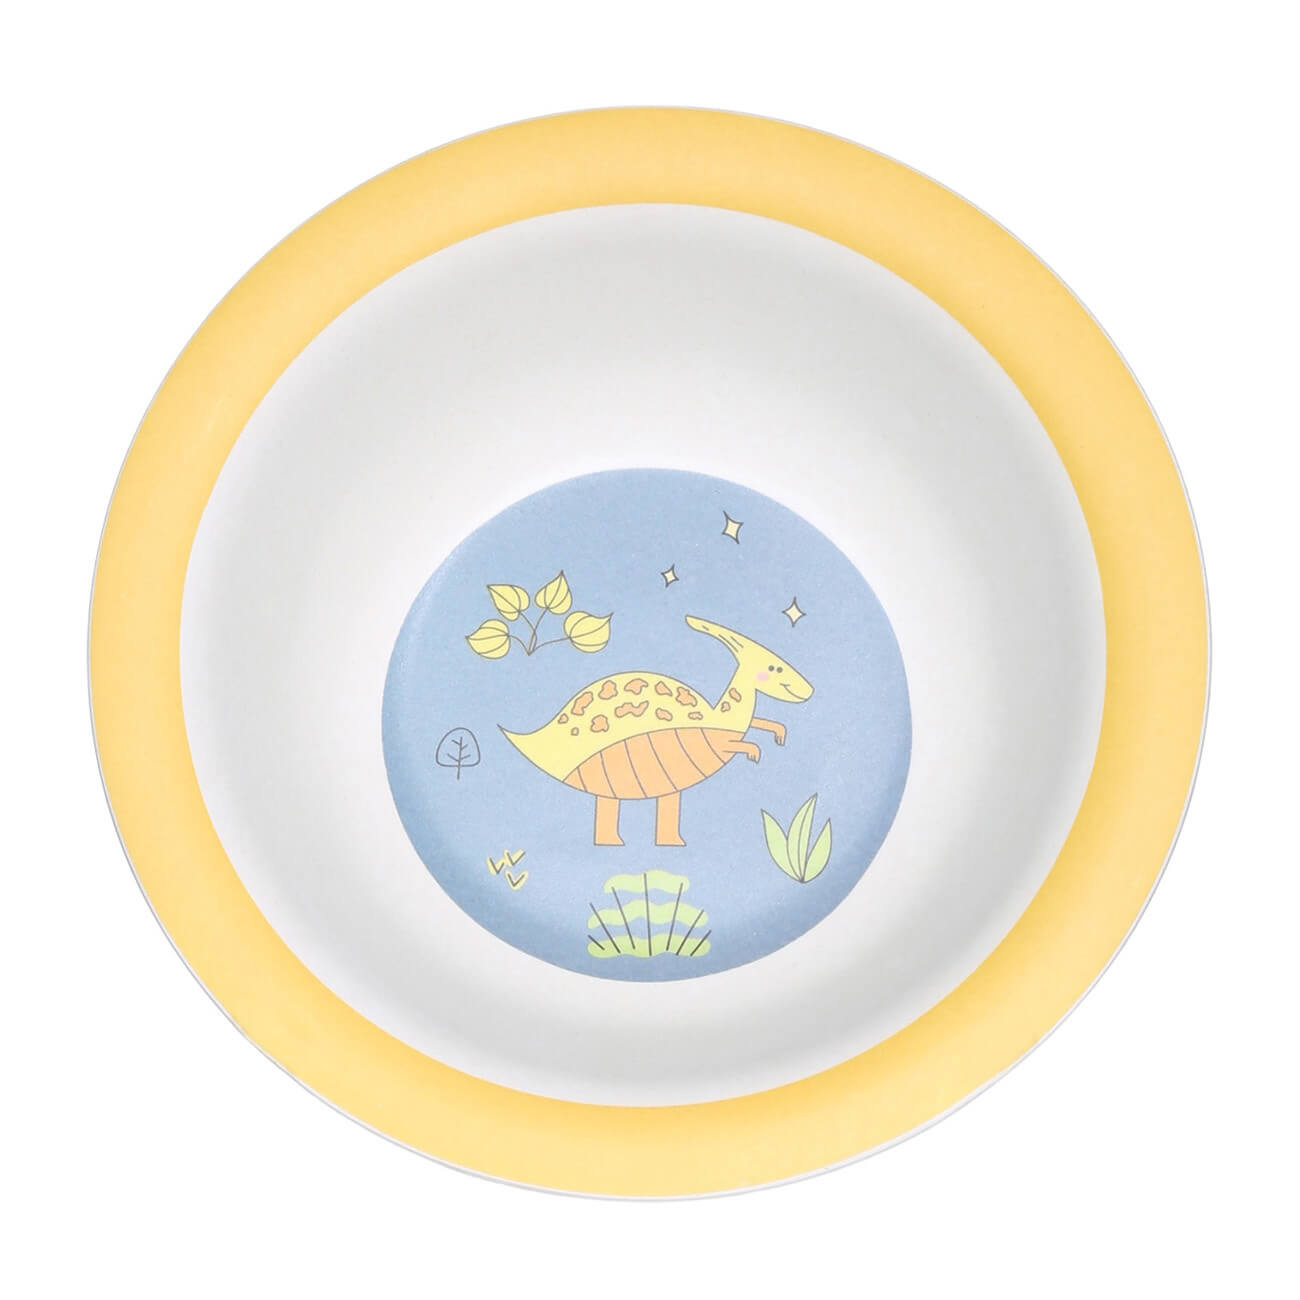 Тарелка суповая, детская, 15х4 см, бамбук, желто-голубая, Динозавр, Dino тарелка суповая детская 15 см бамбук розово мятная единорог и звезды unicorn